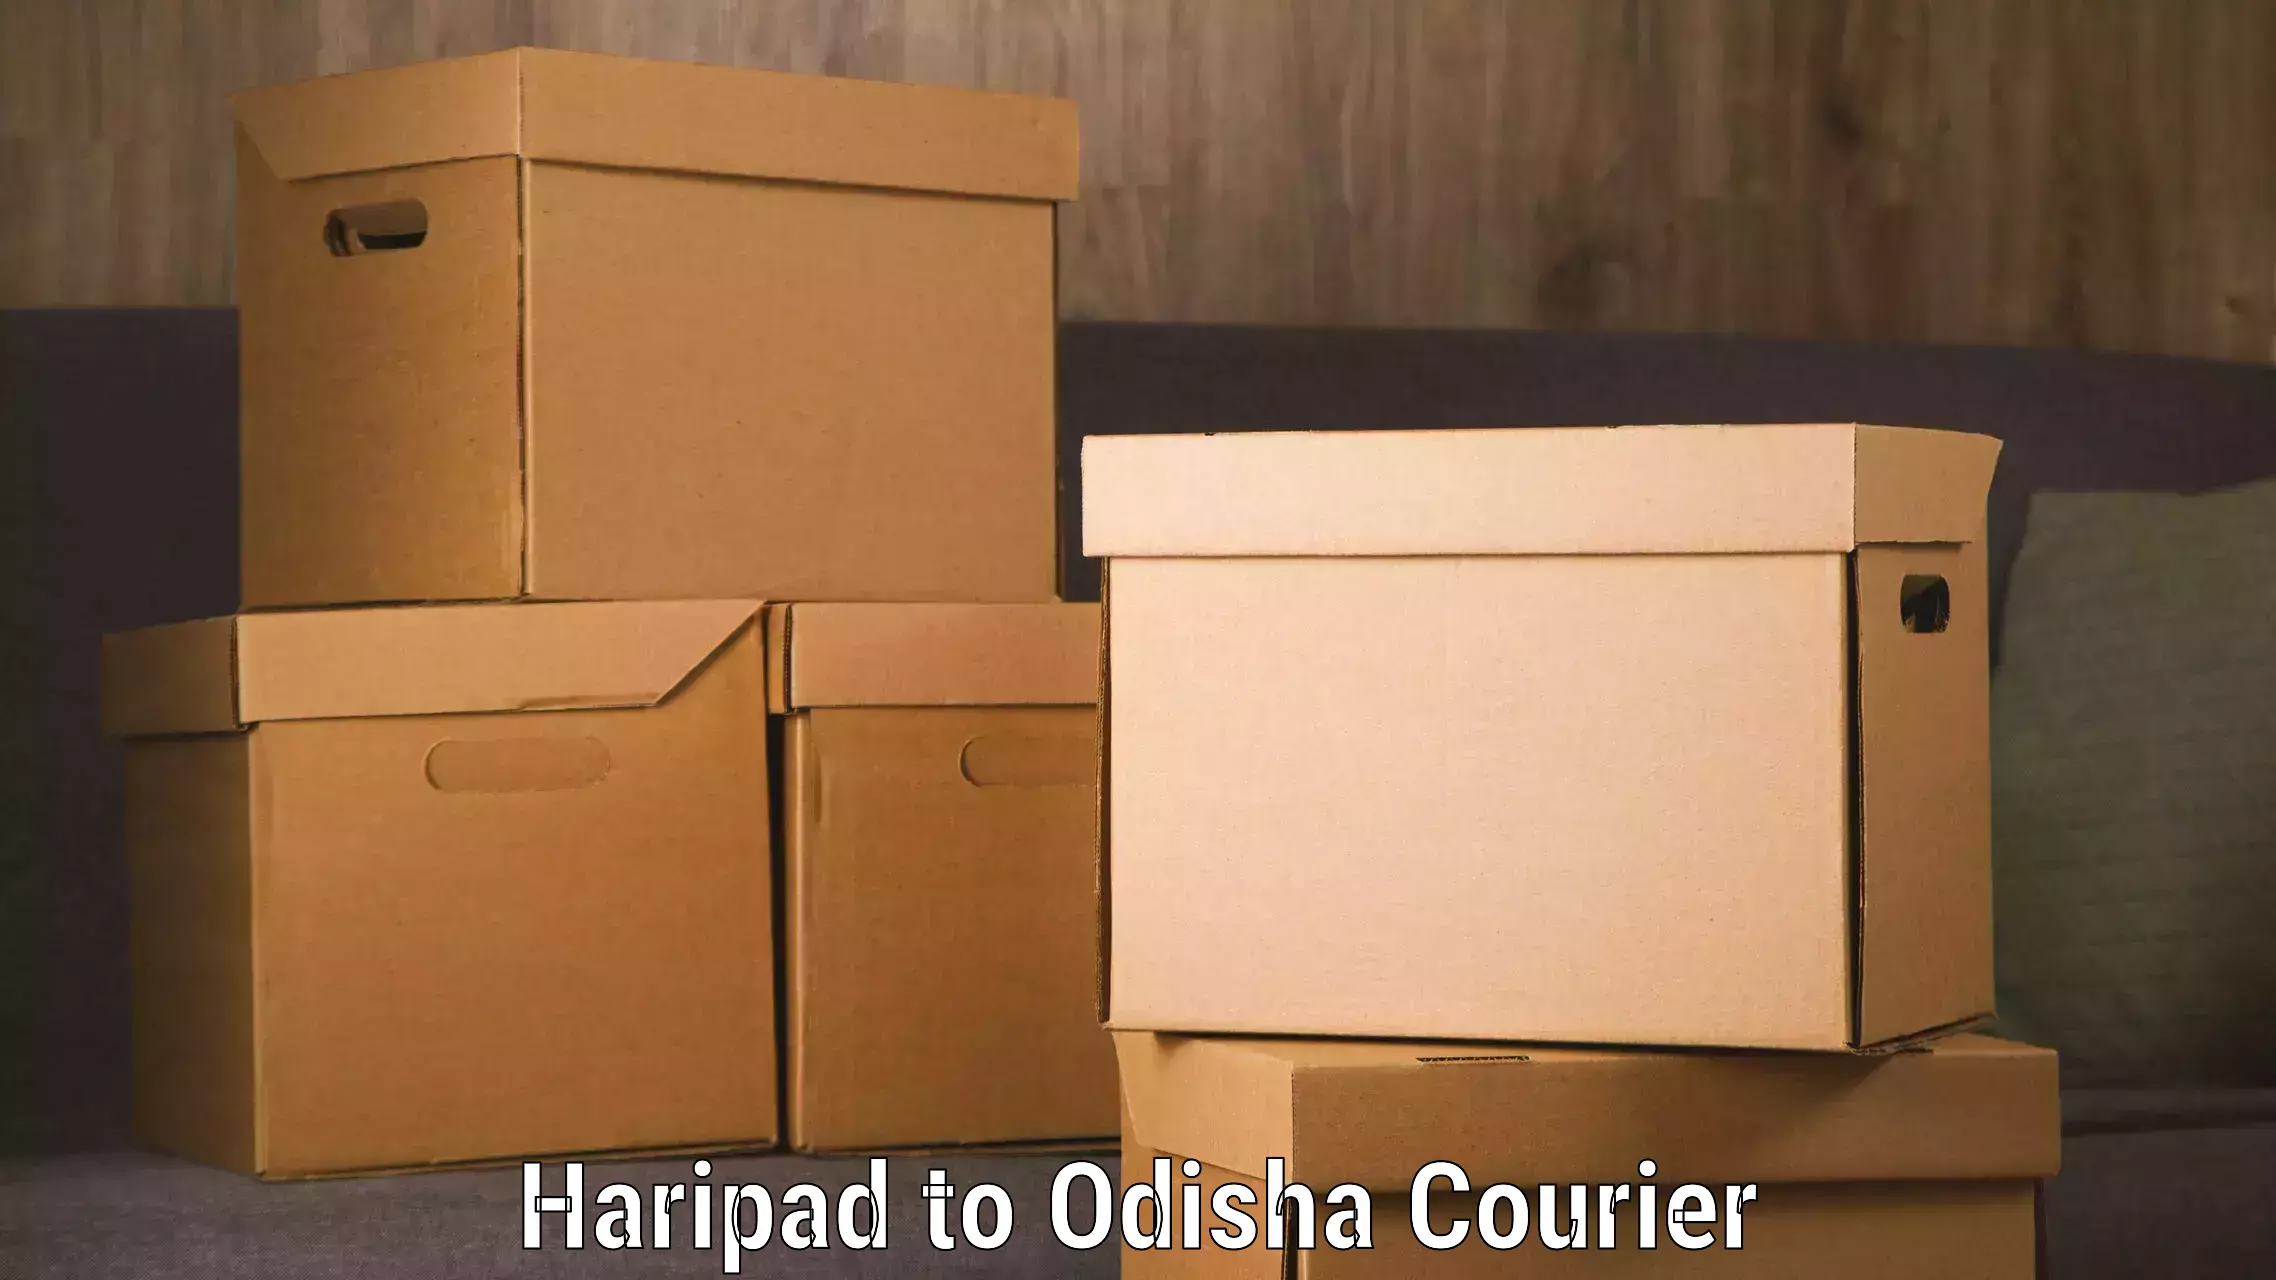 Express logistics providers Haripad to Babujang